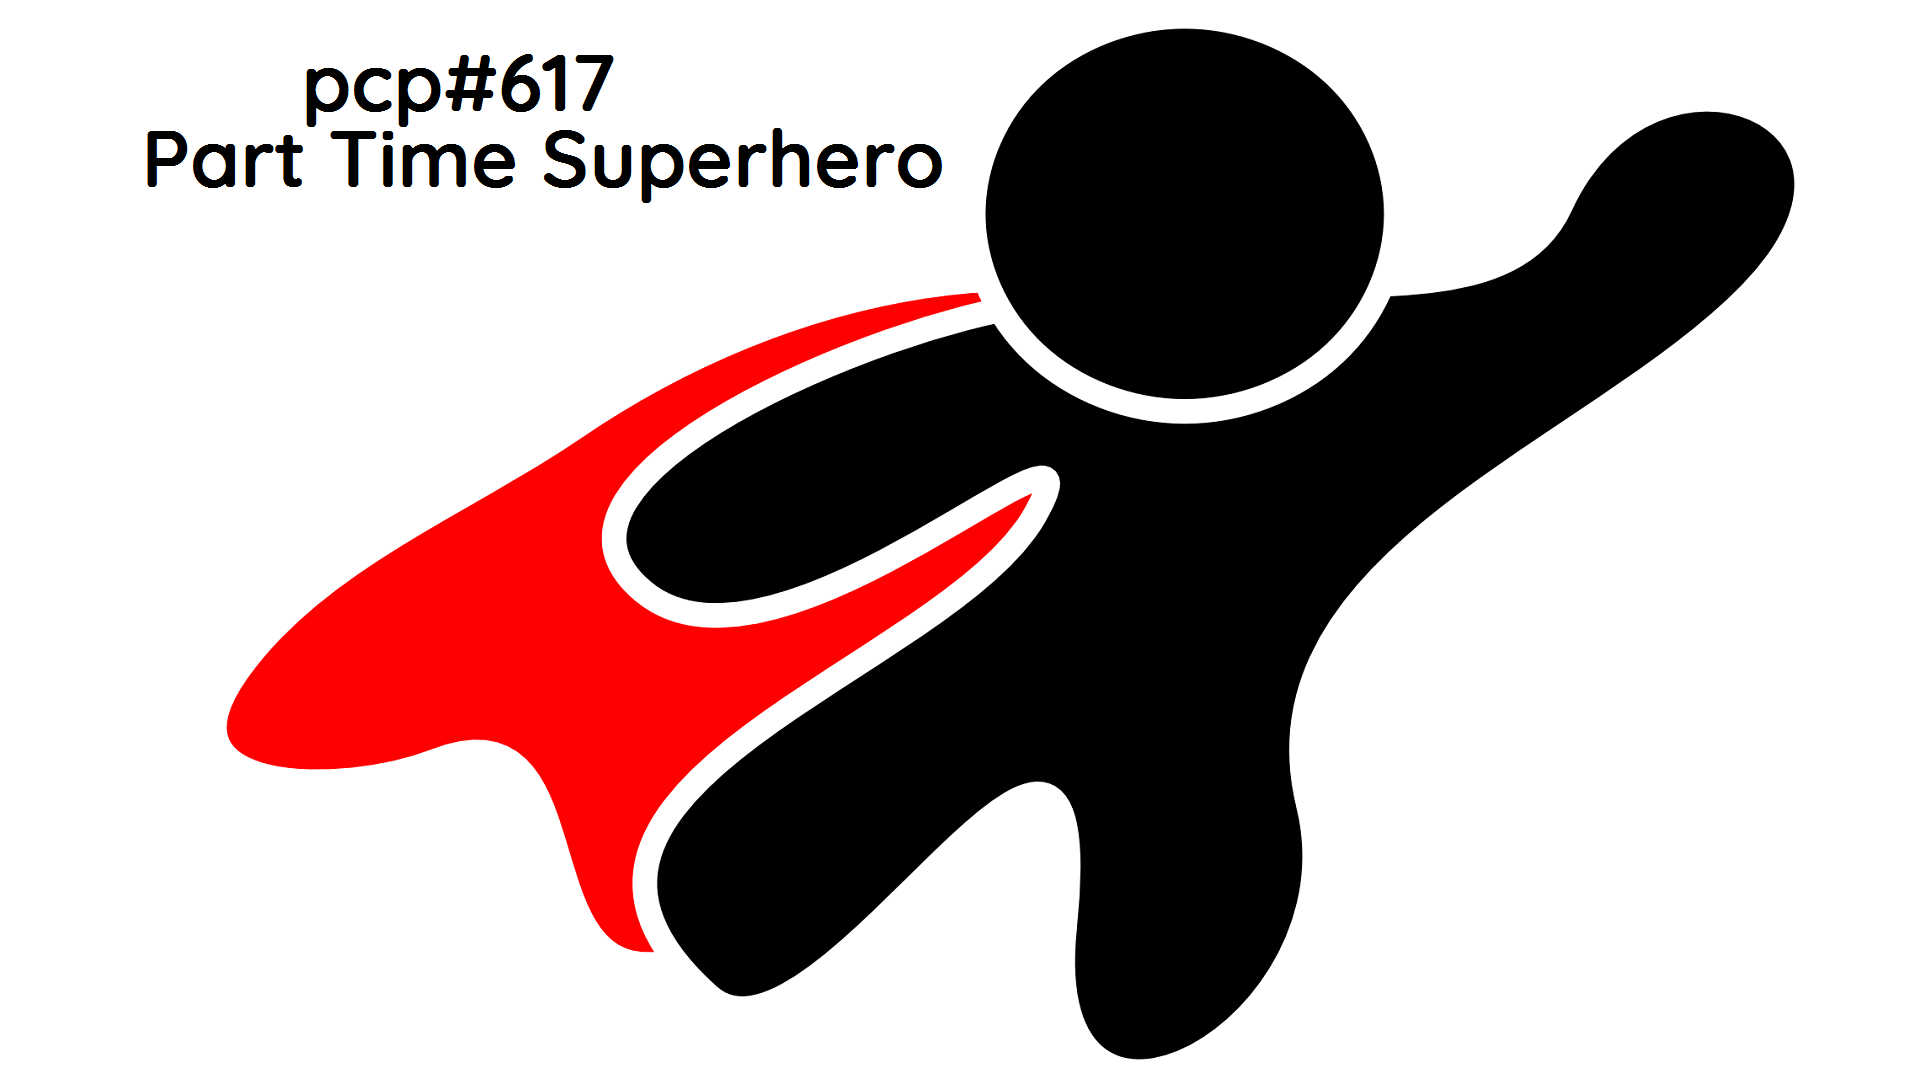 PCP#617... Part Time Superhero....